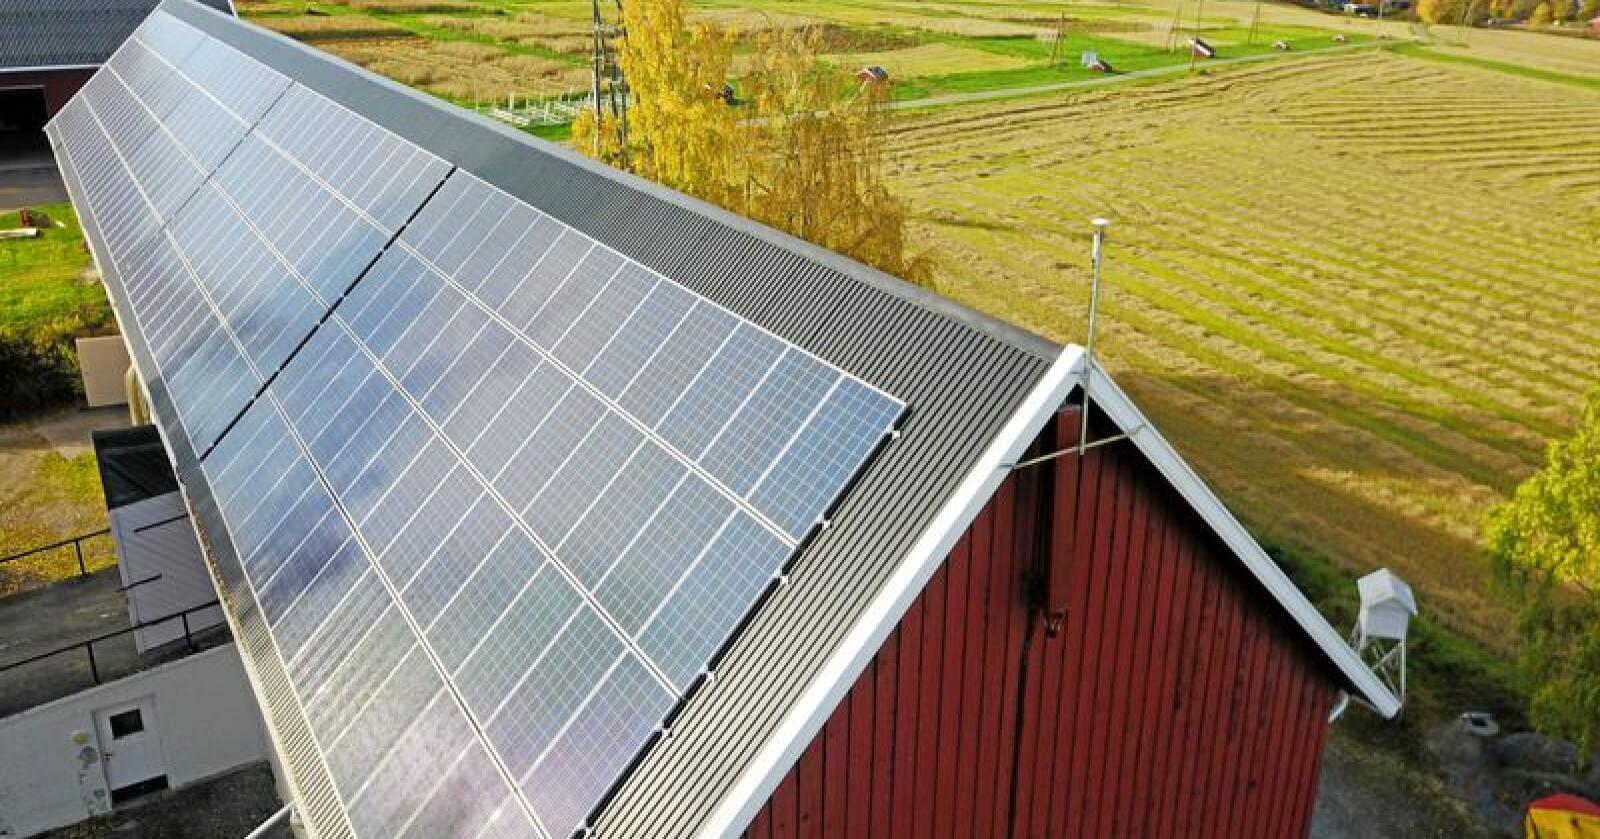 Solenergi Norge, som leverer og monterer solcelleanlegg, forteller om rekordetterspørsel etter at strømprisene skjøt i været i høst. Foto: Nbio